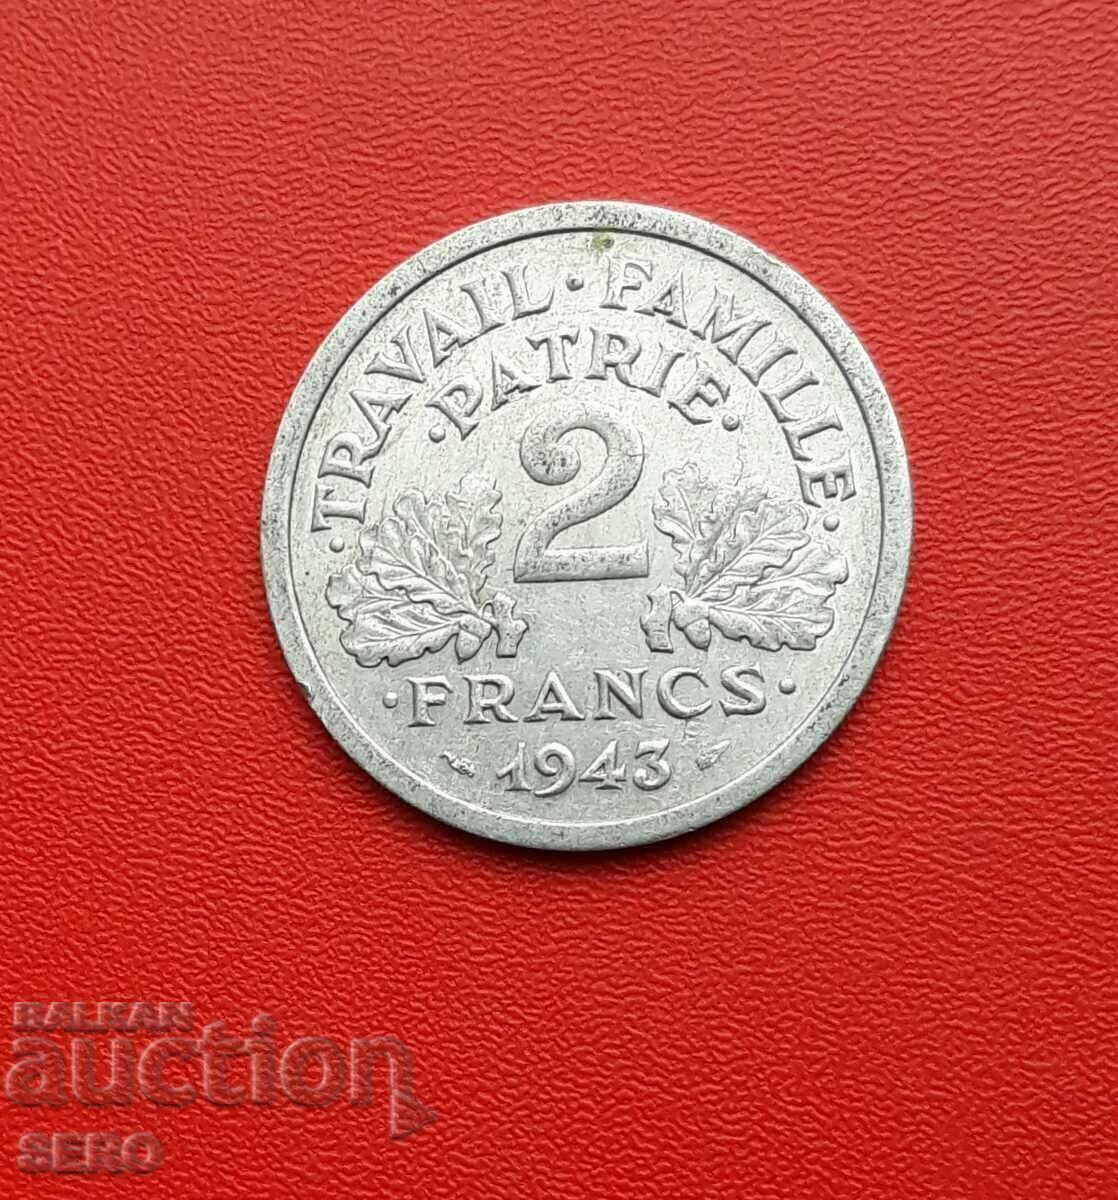 France/German occupation/-2 francs 1943